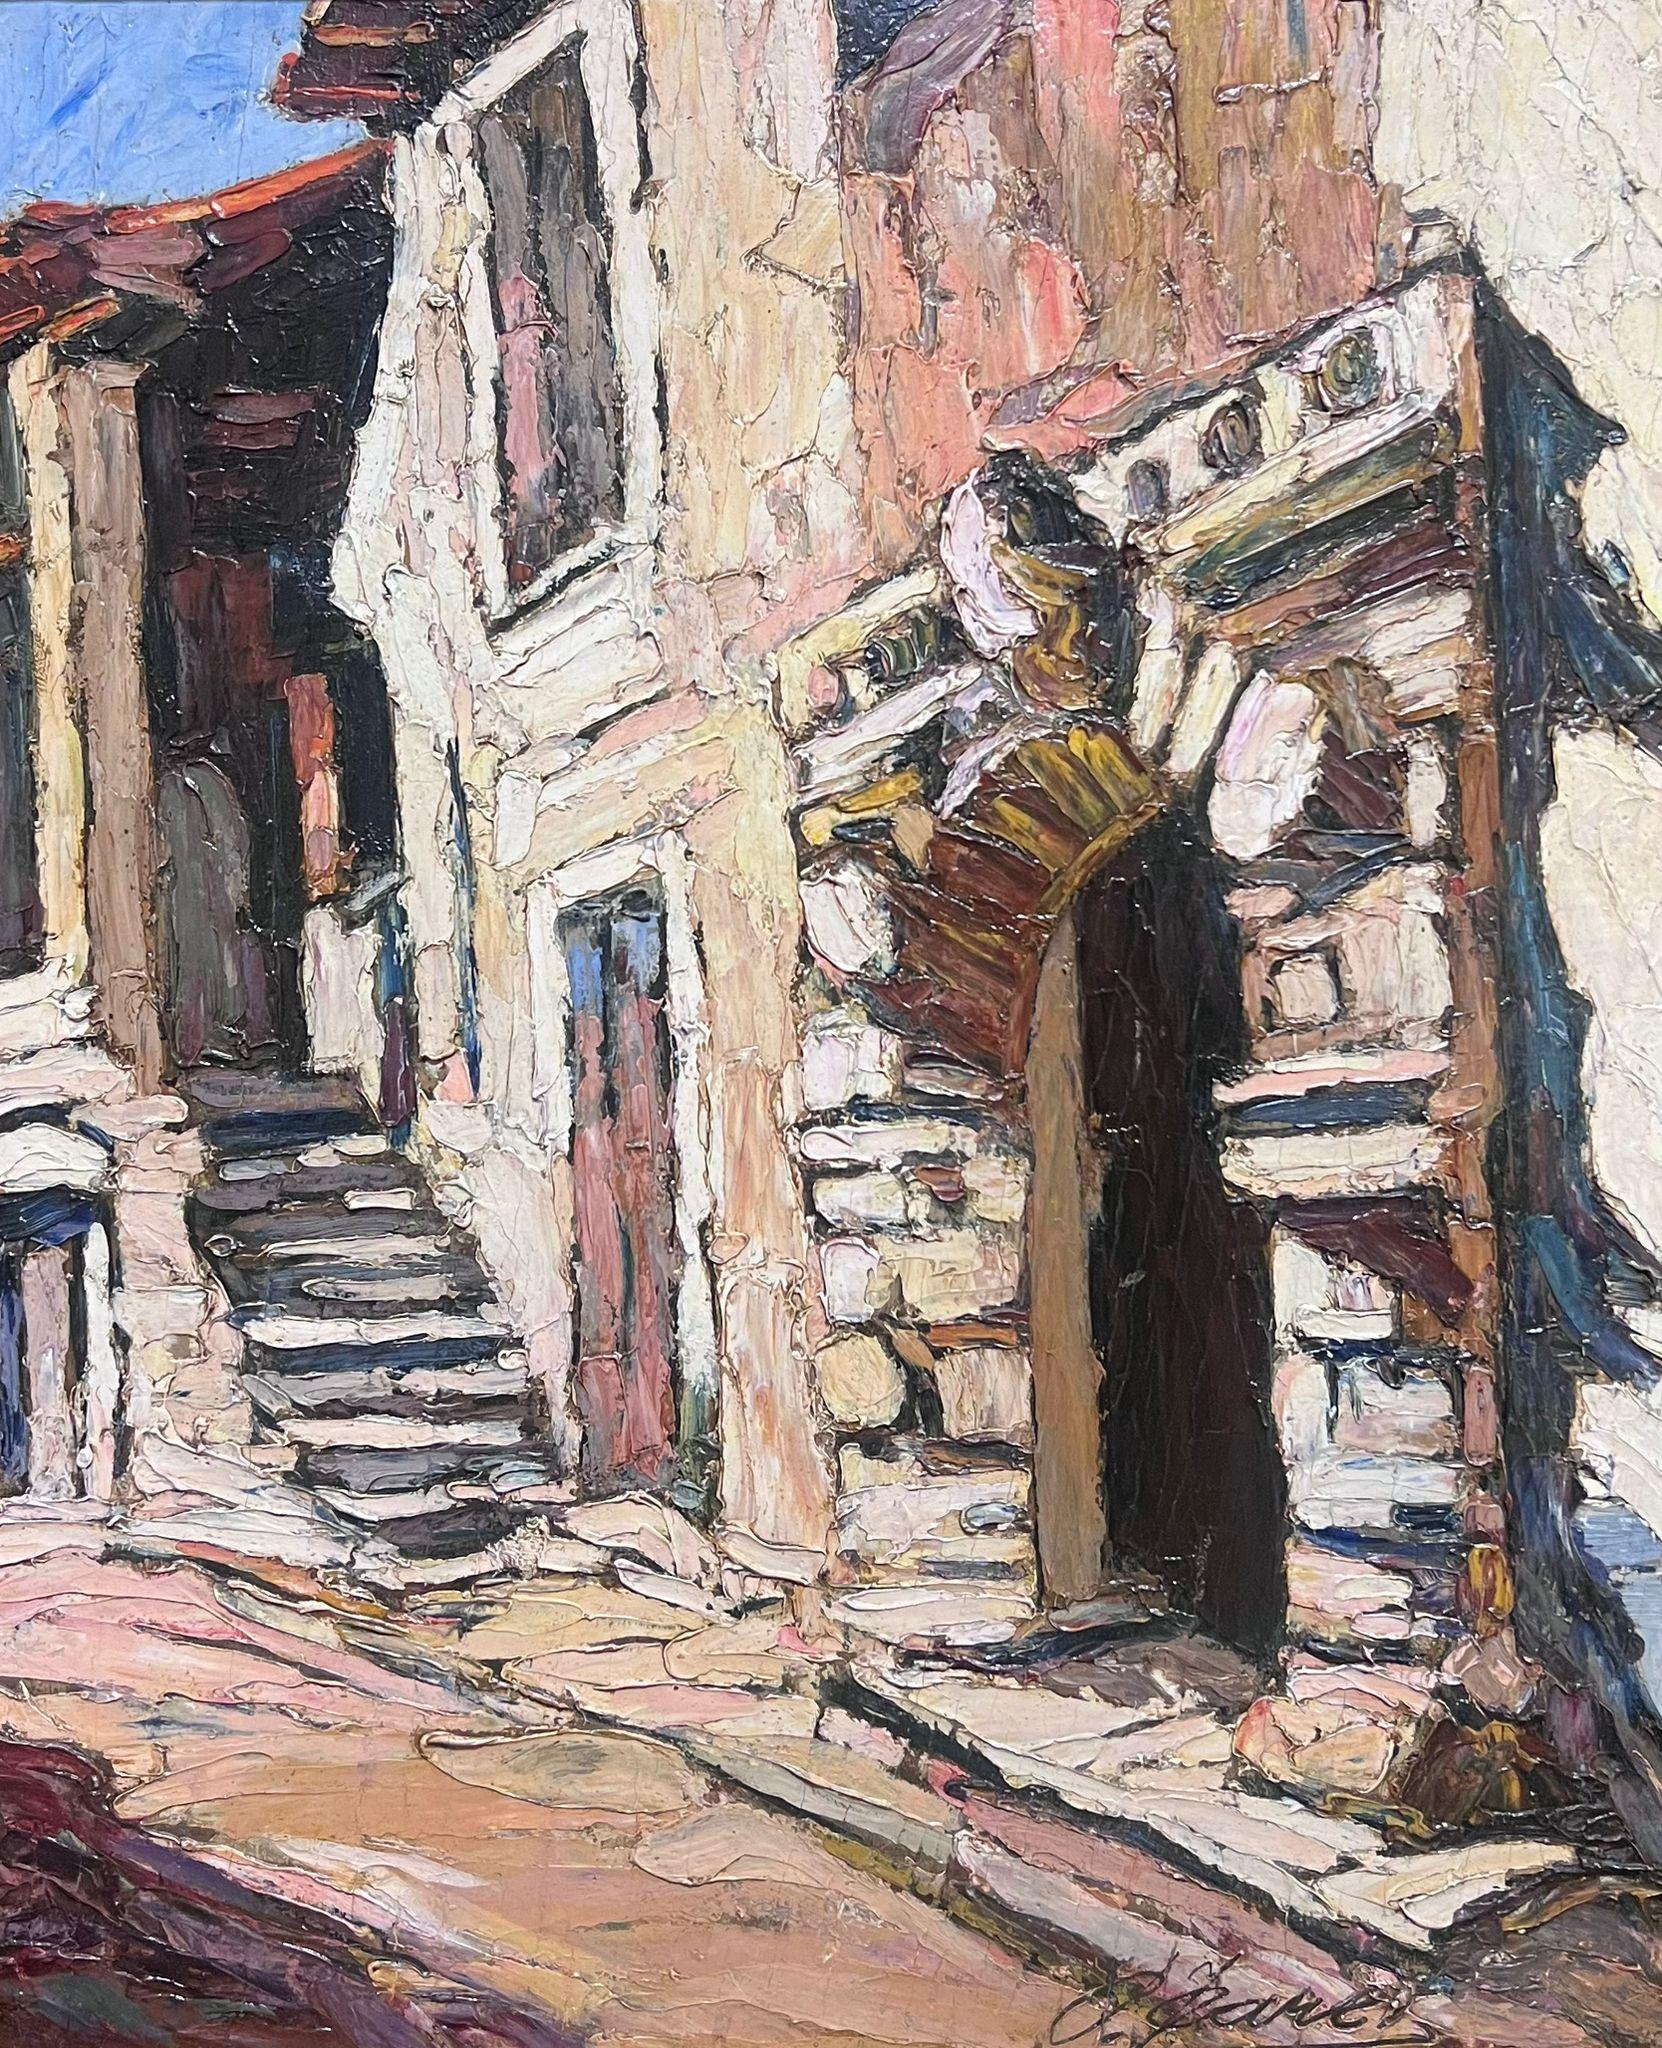 Old Provencal Street Scene, gewölbte Stein-Türste, signiert, französisches Ölgemälde  – Painting von 1930's French Post Impressionist